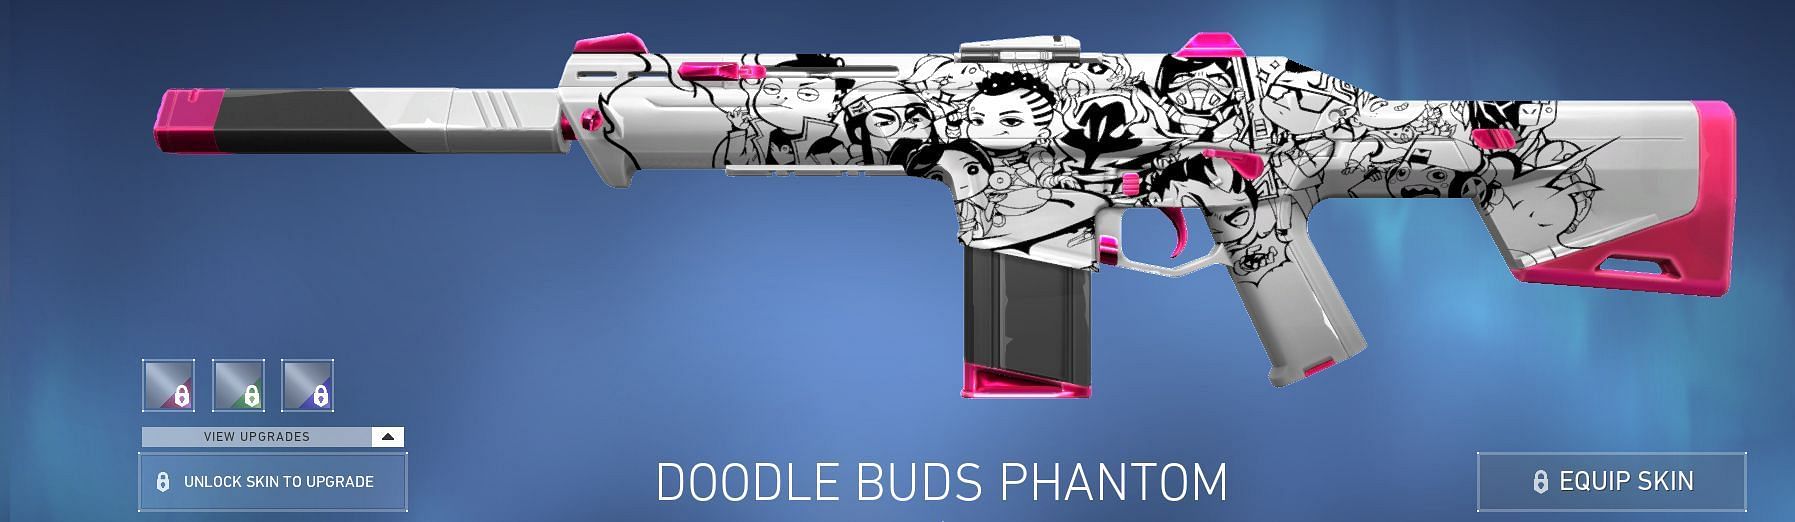 Doodle Buds Phantom (Image via Riot Games)